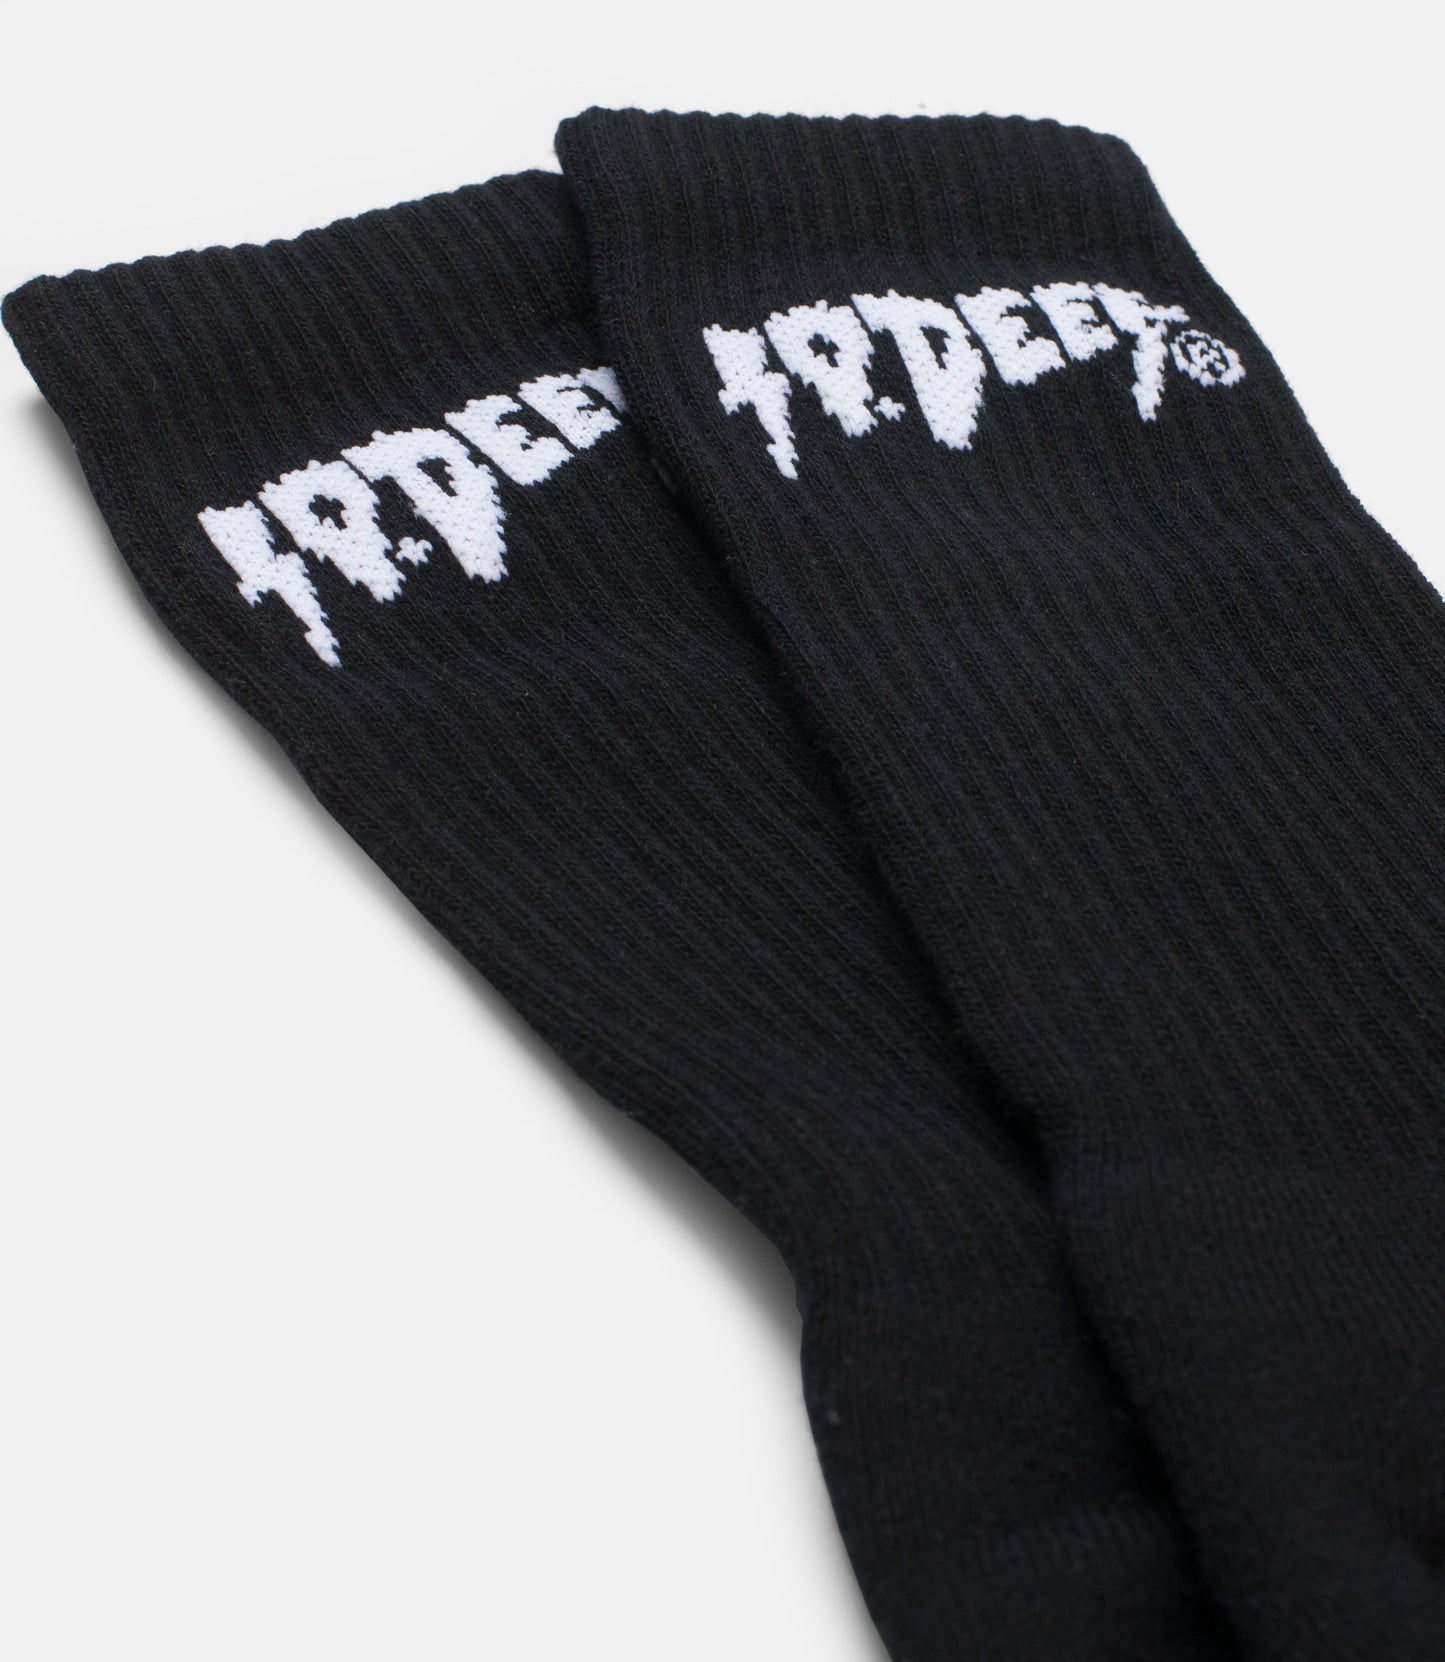 10Deep - Sound & Fury Socks, Black